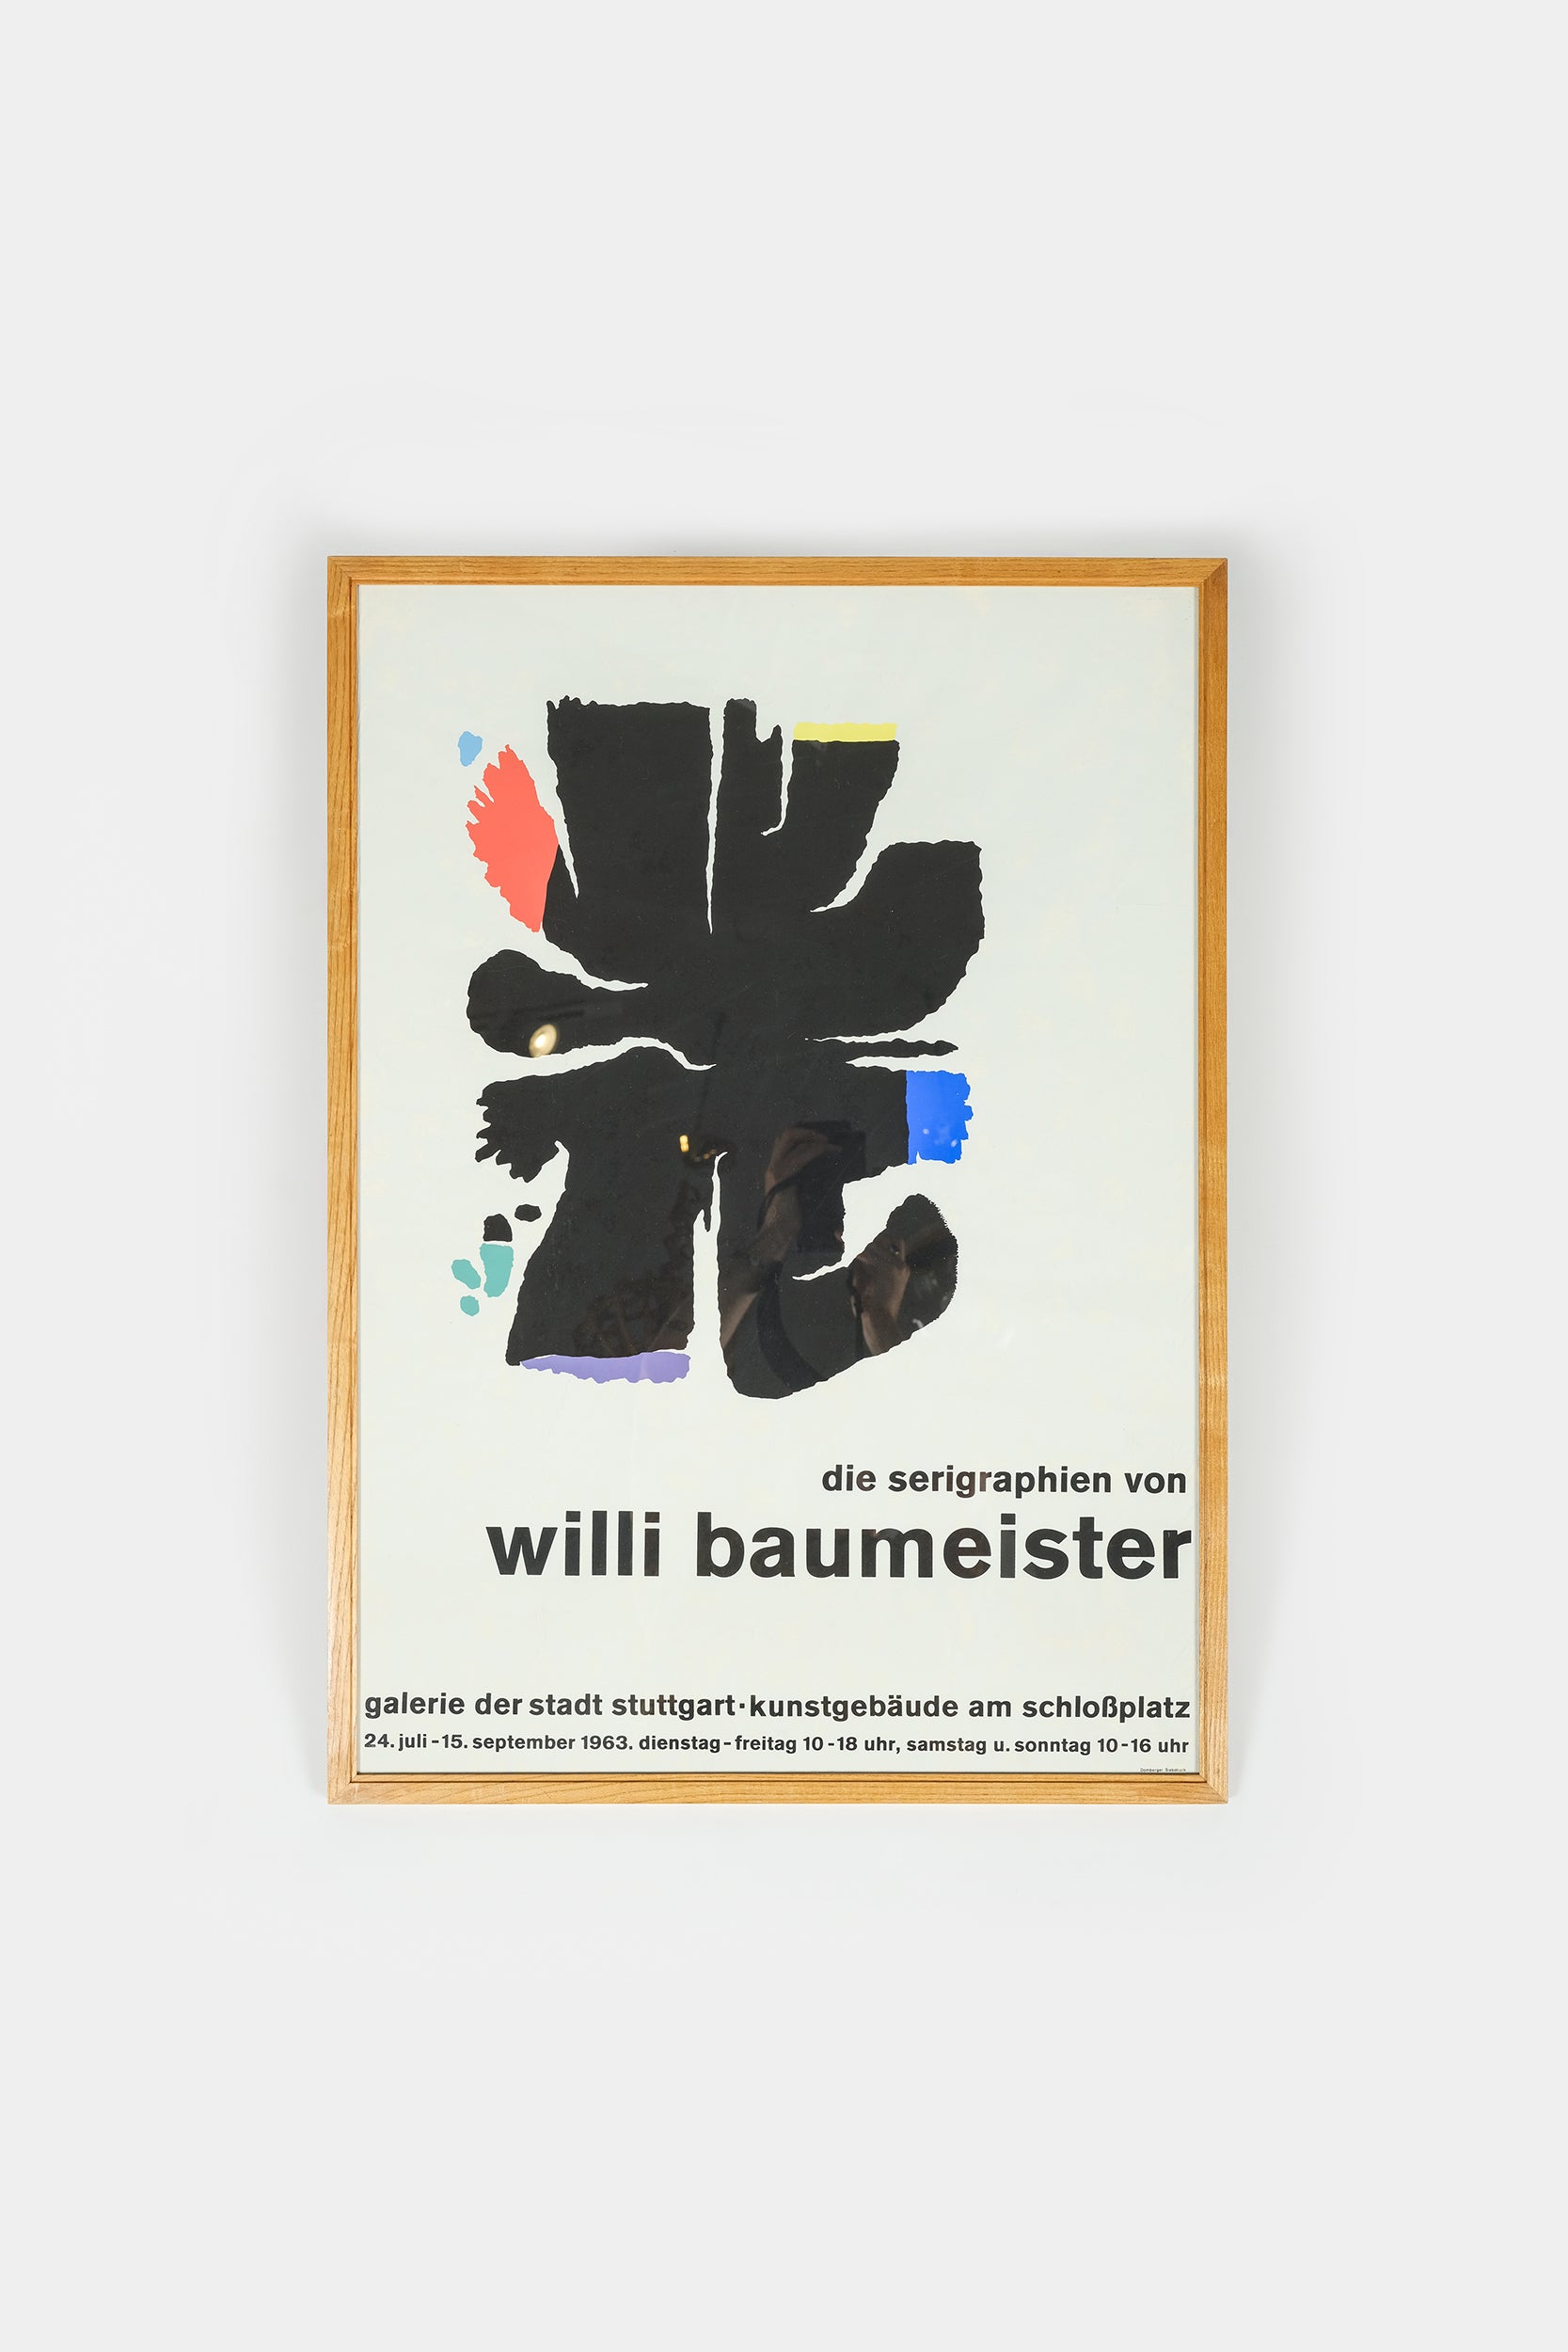 Willi Baumeister Plakat, gerahmt, Ausstellung 1963